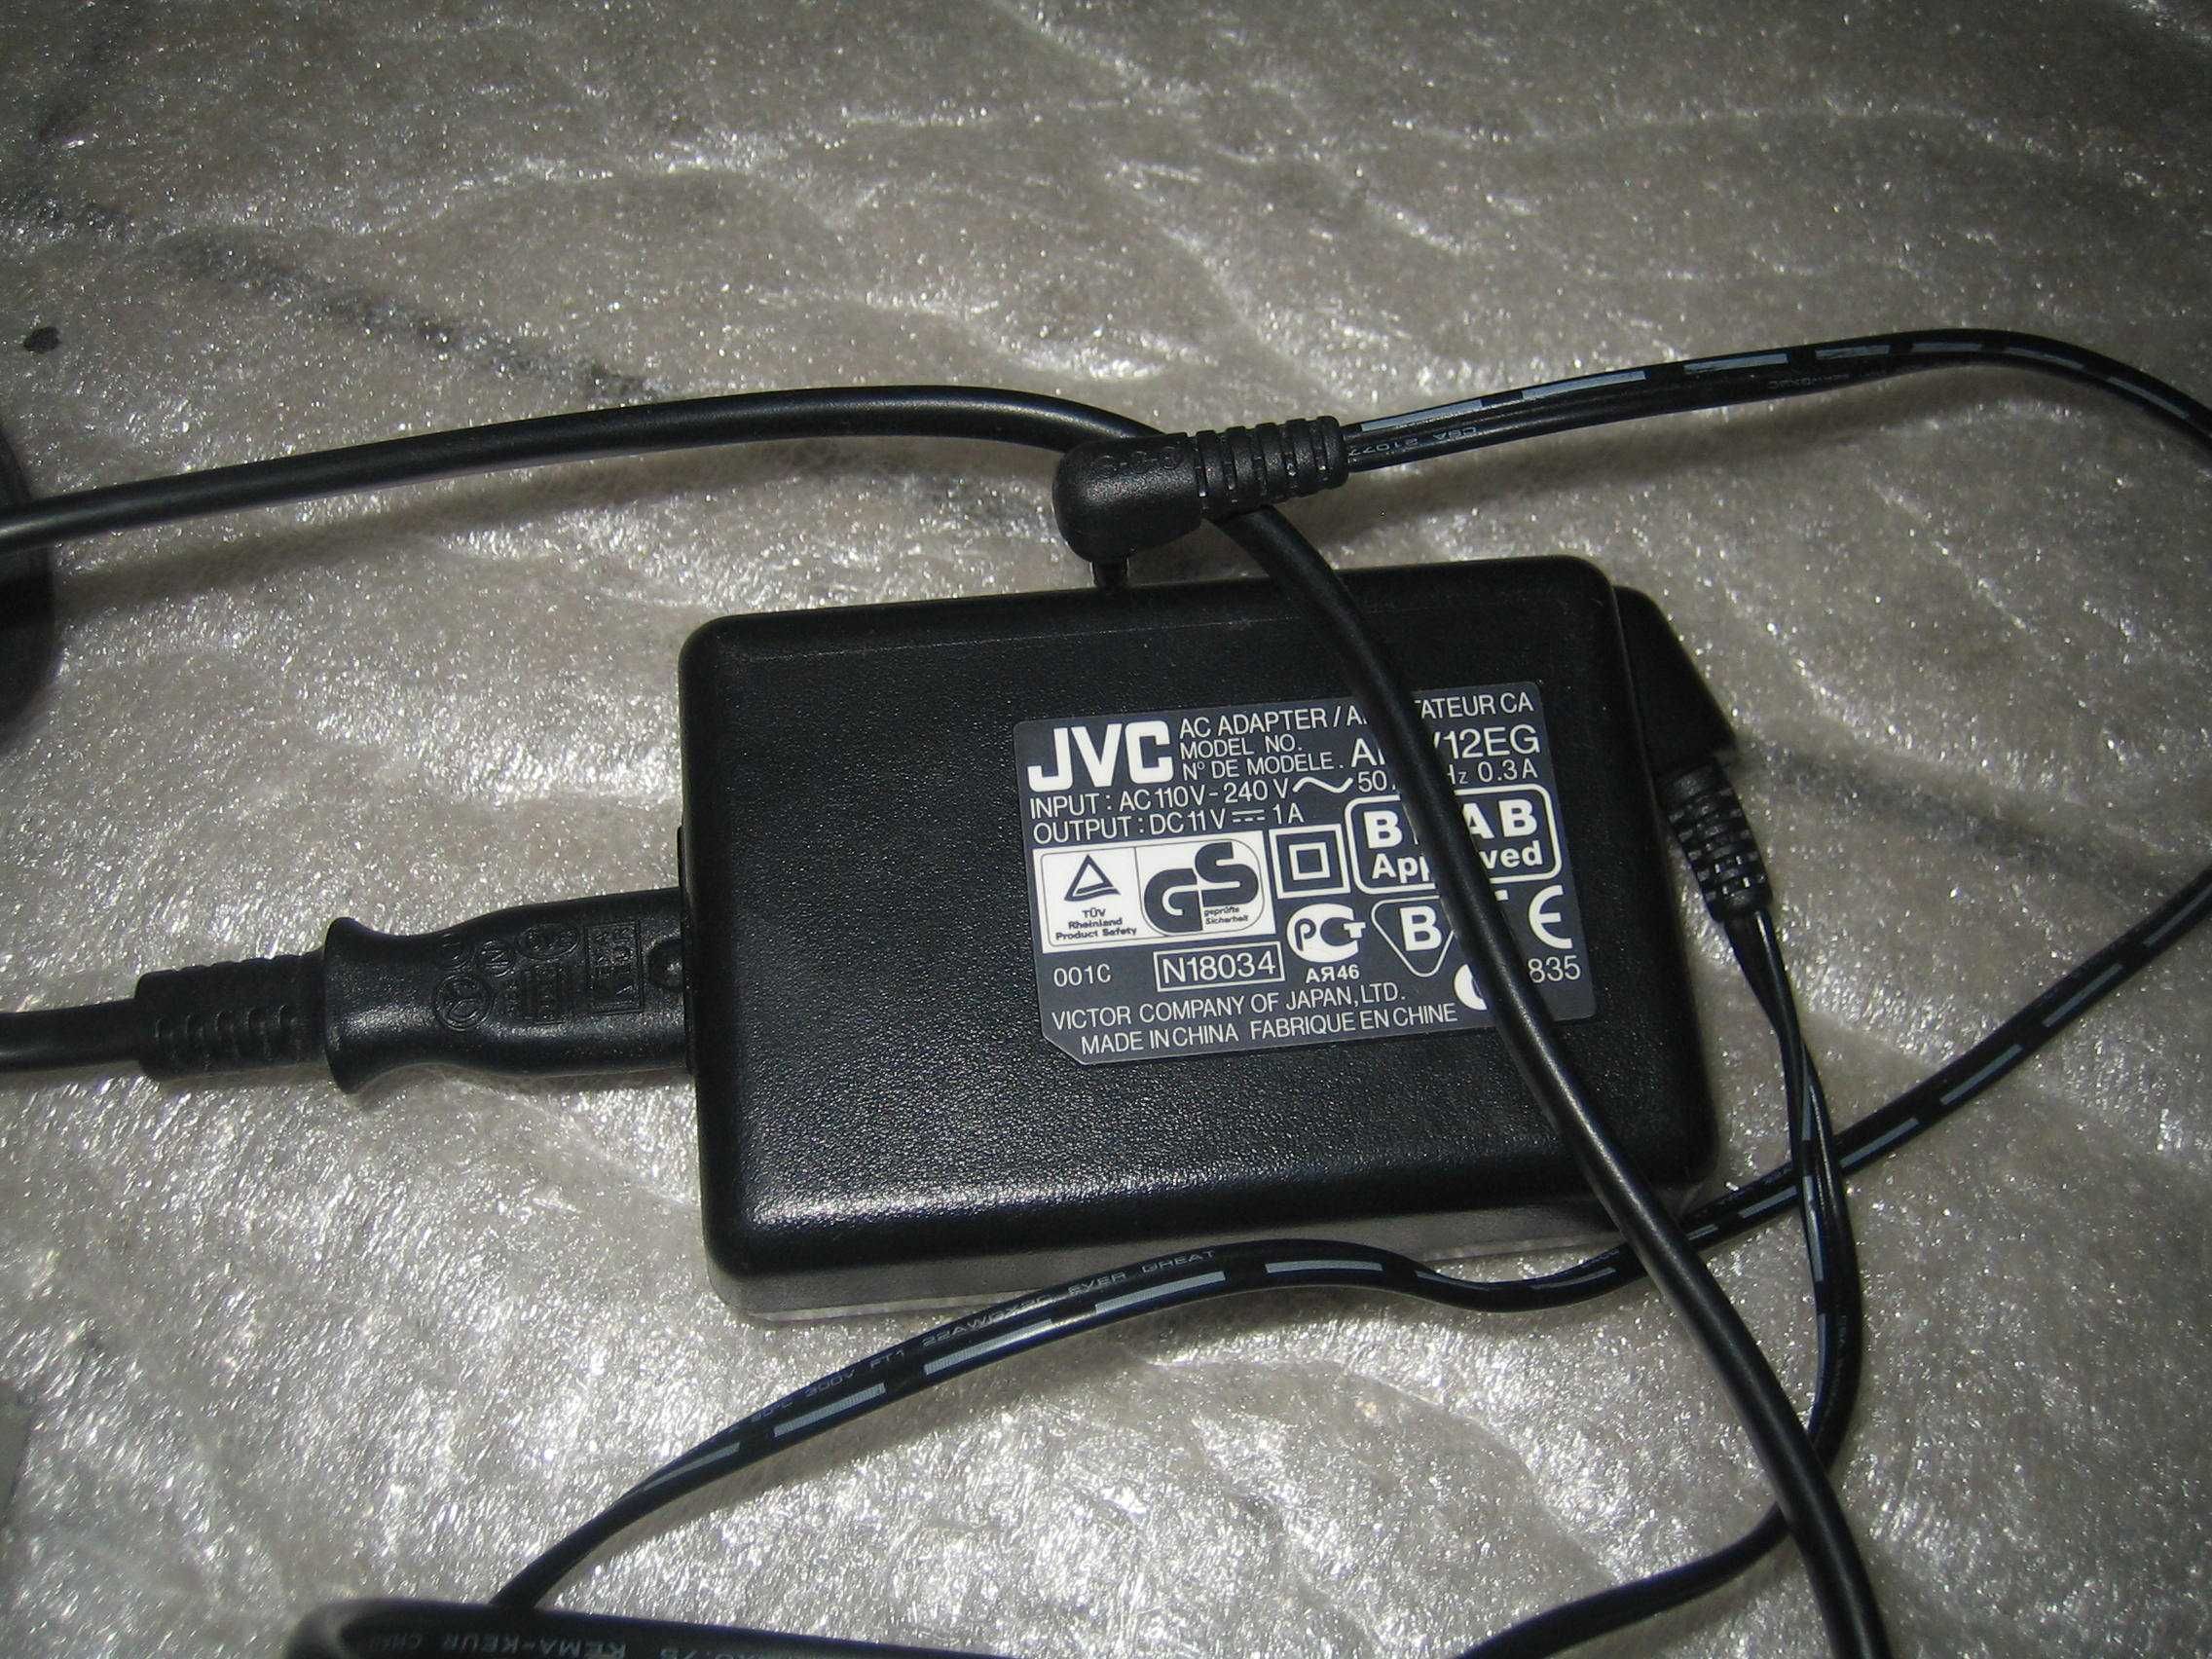 jvc камера VHS c GR-FXM38eg